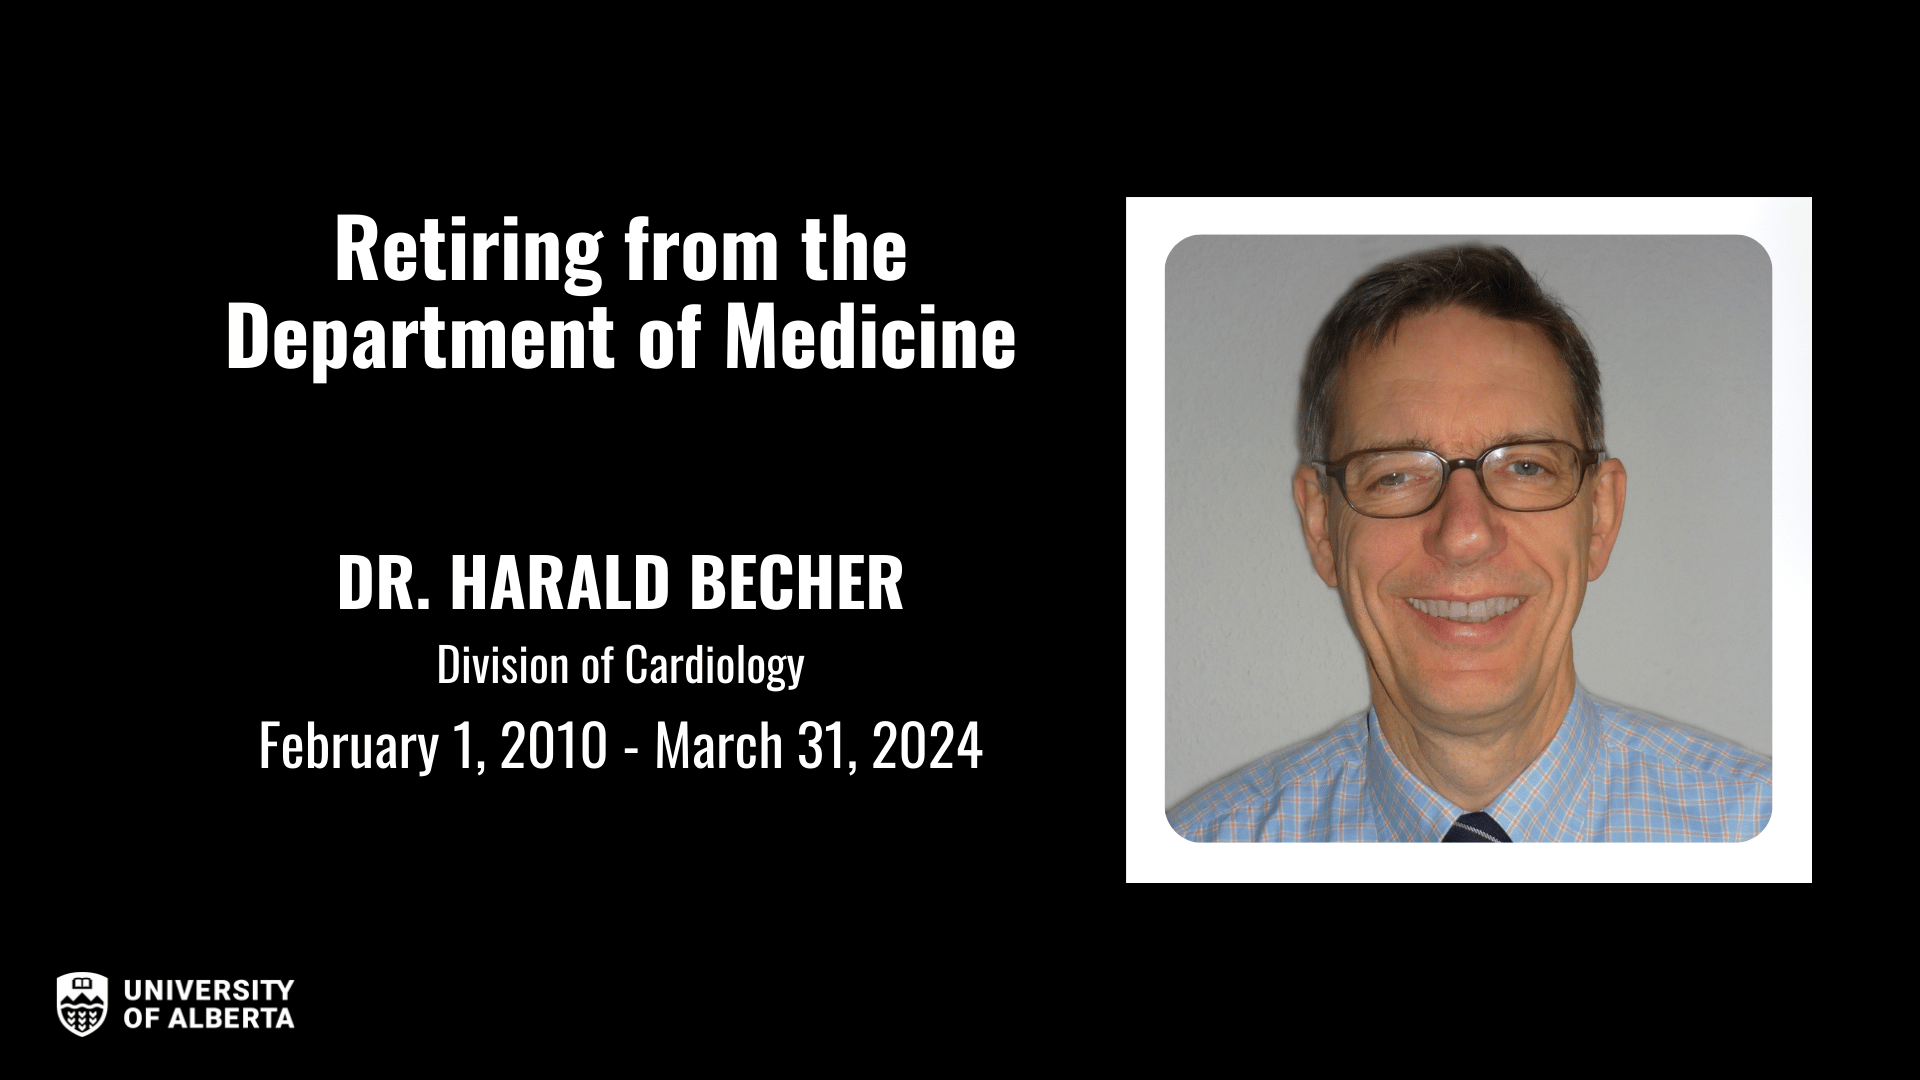 Dr. Harald Becher